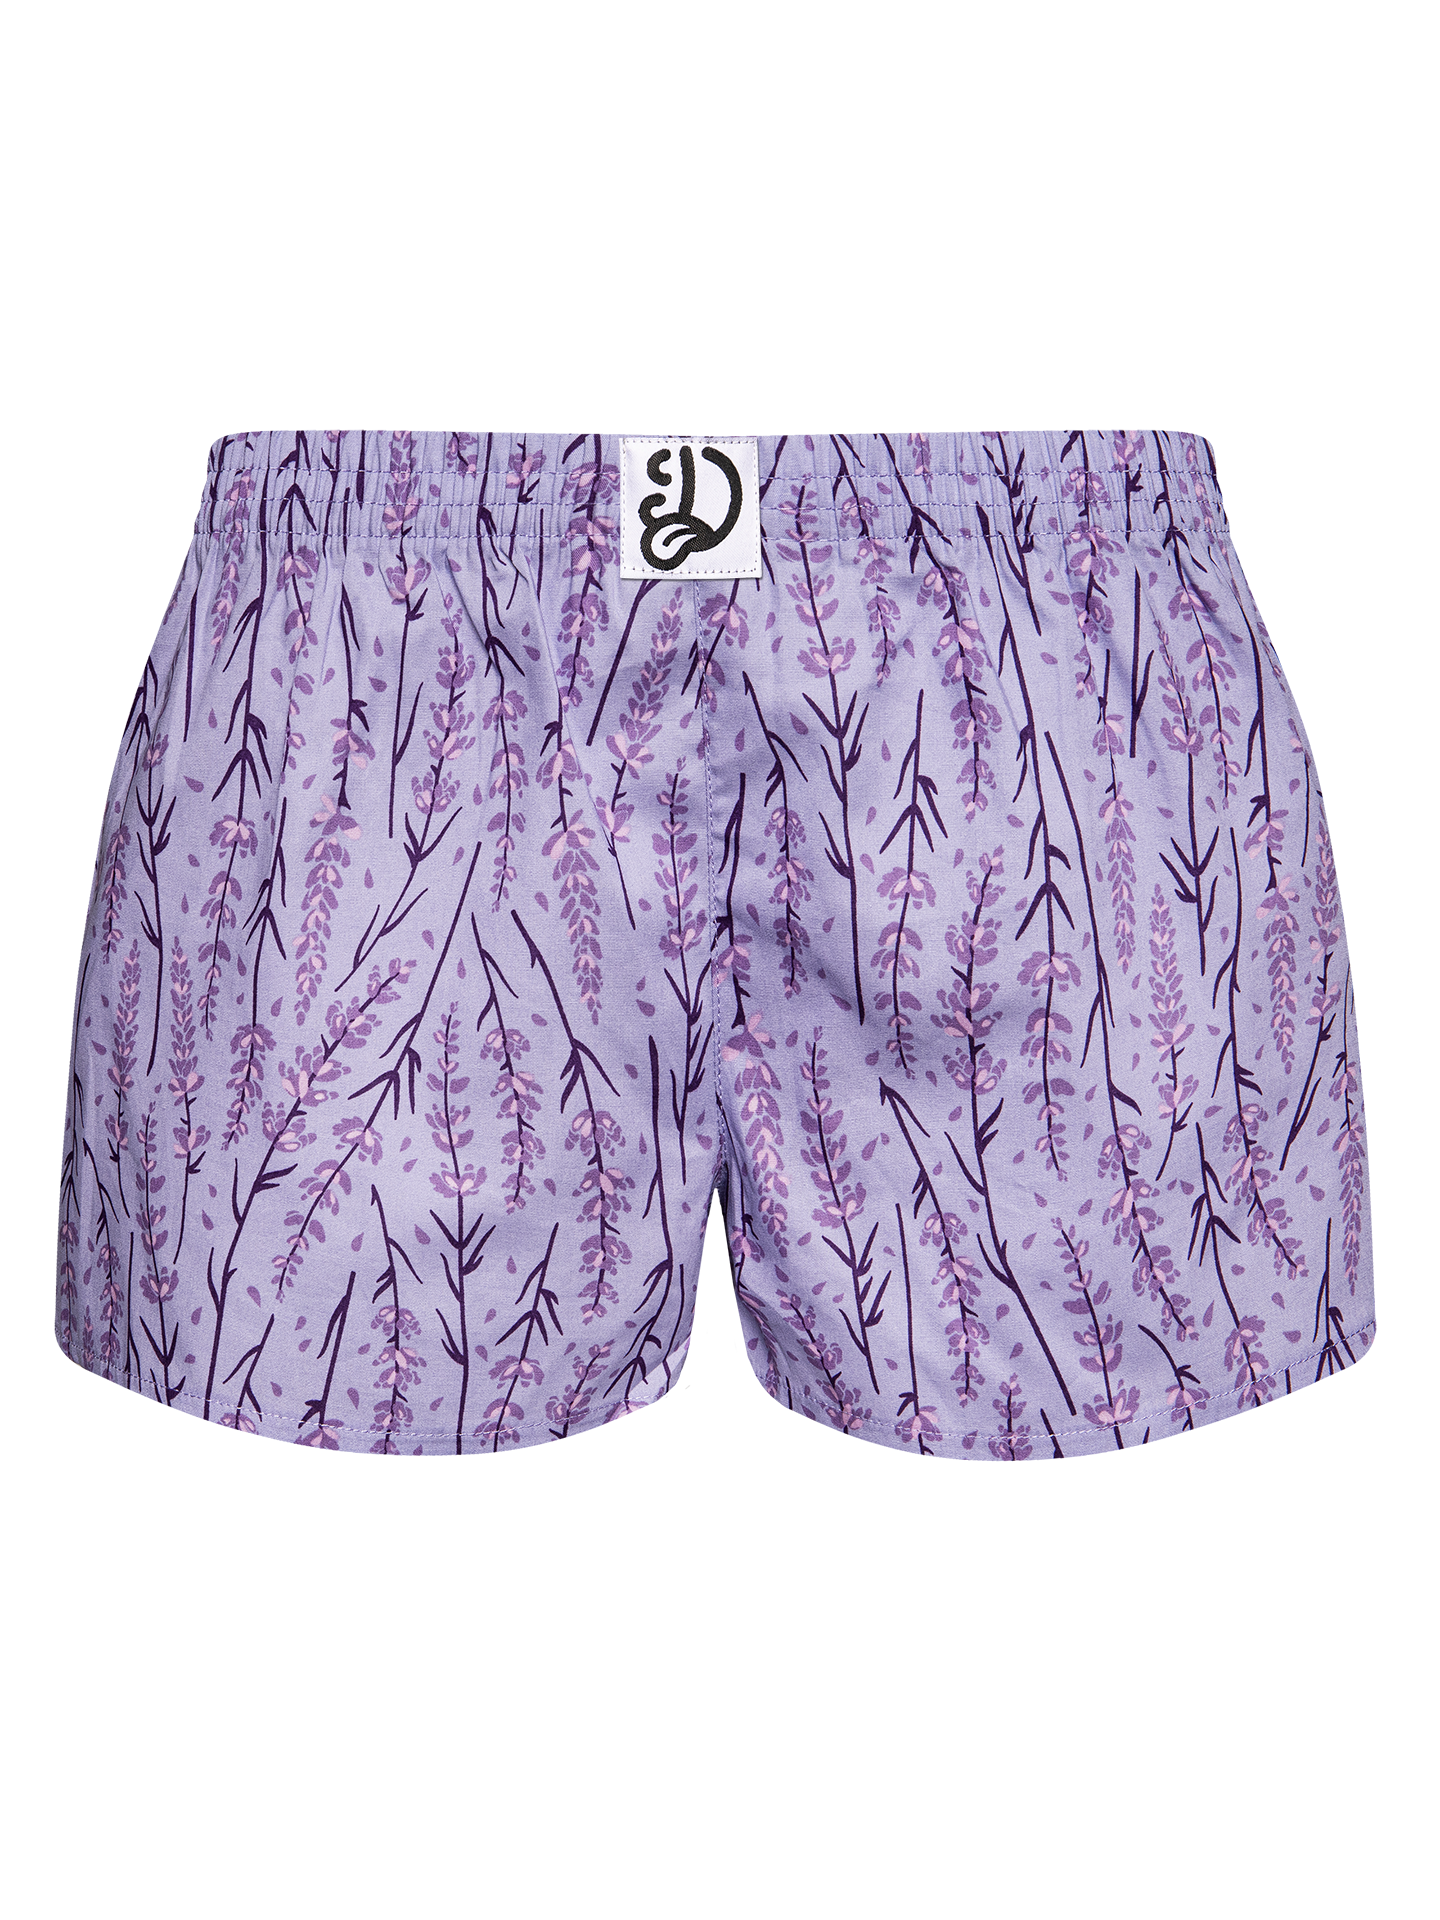 Women's Boxer Shorts Lavender